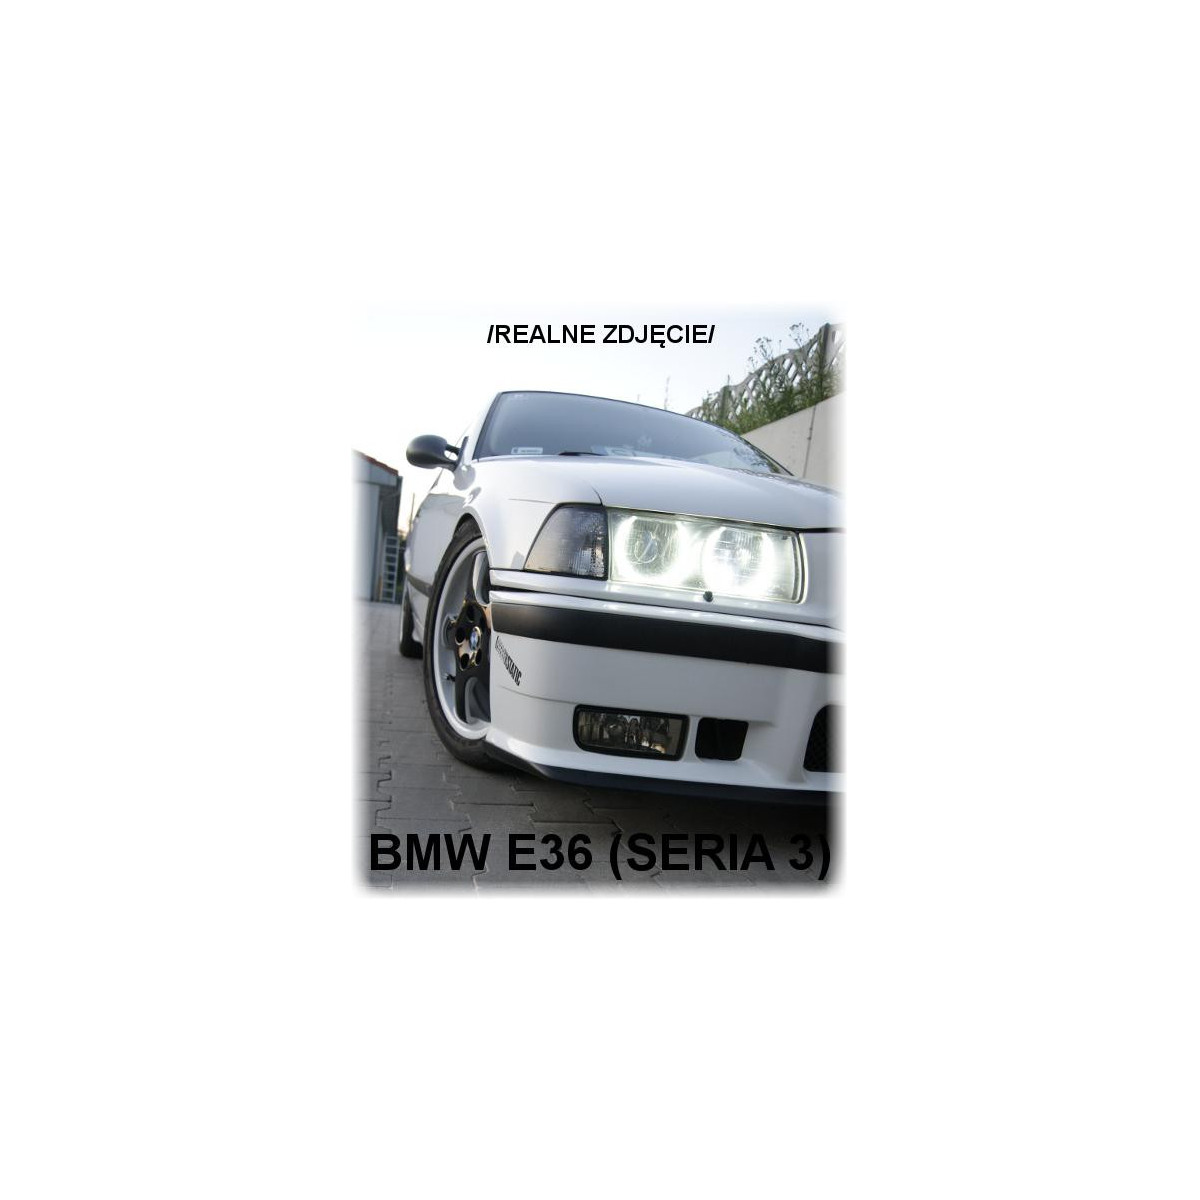 RINGI DO LAMP SMD ANGEL EYES BMW E36 E38 E39 E46